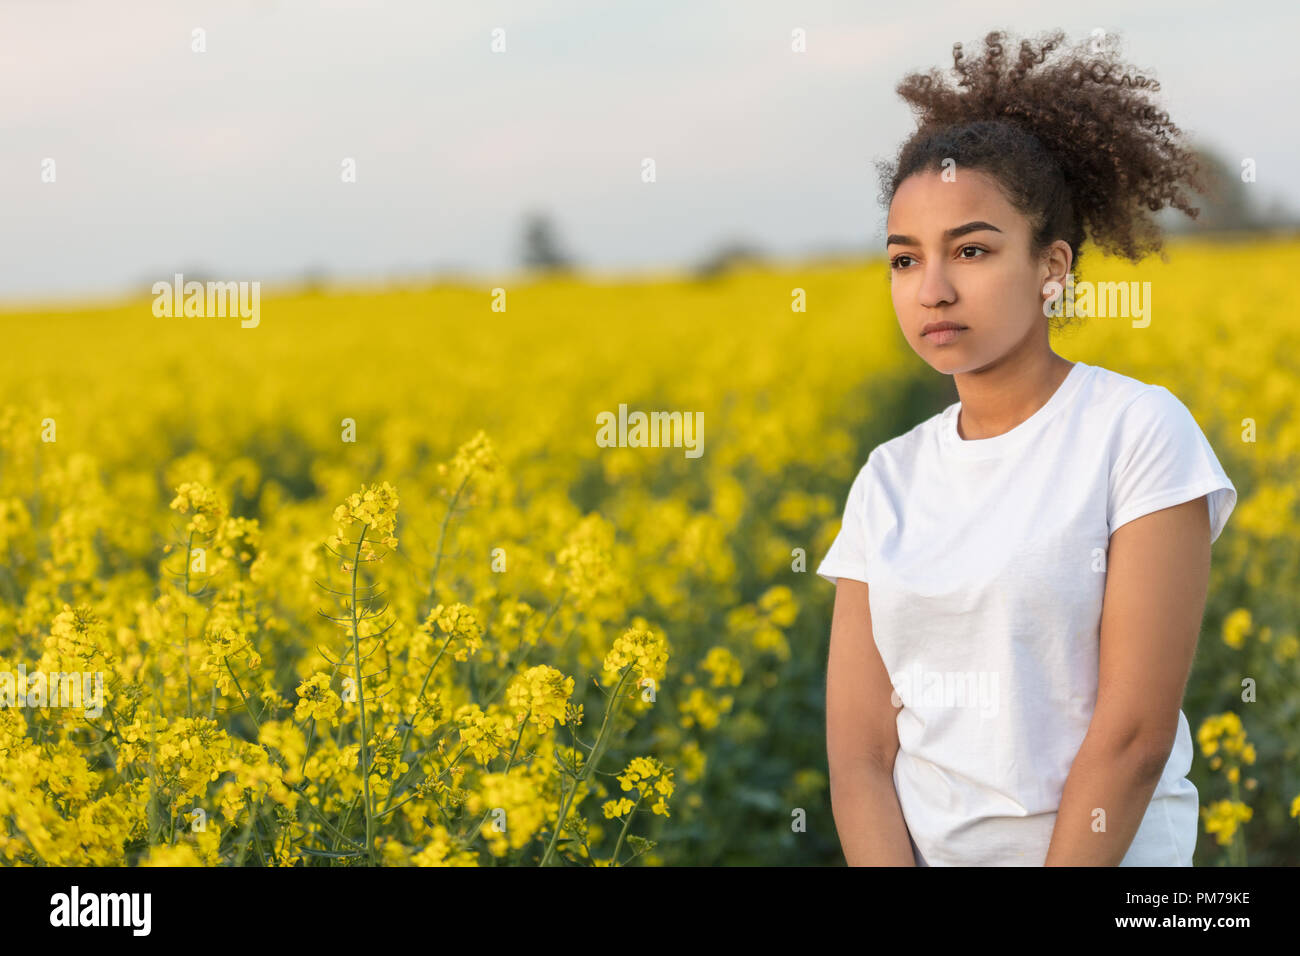 Schönen gemischten Rennen African American Girl Teenager weibliche junge Frau traurig, deprimiert oder am Ende eines Pfad nachdenklich in einem Feld von gelben Blumen Stockfoto